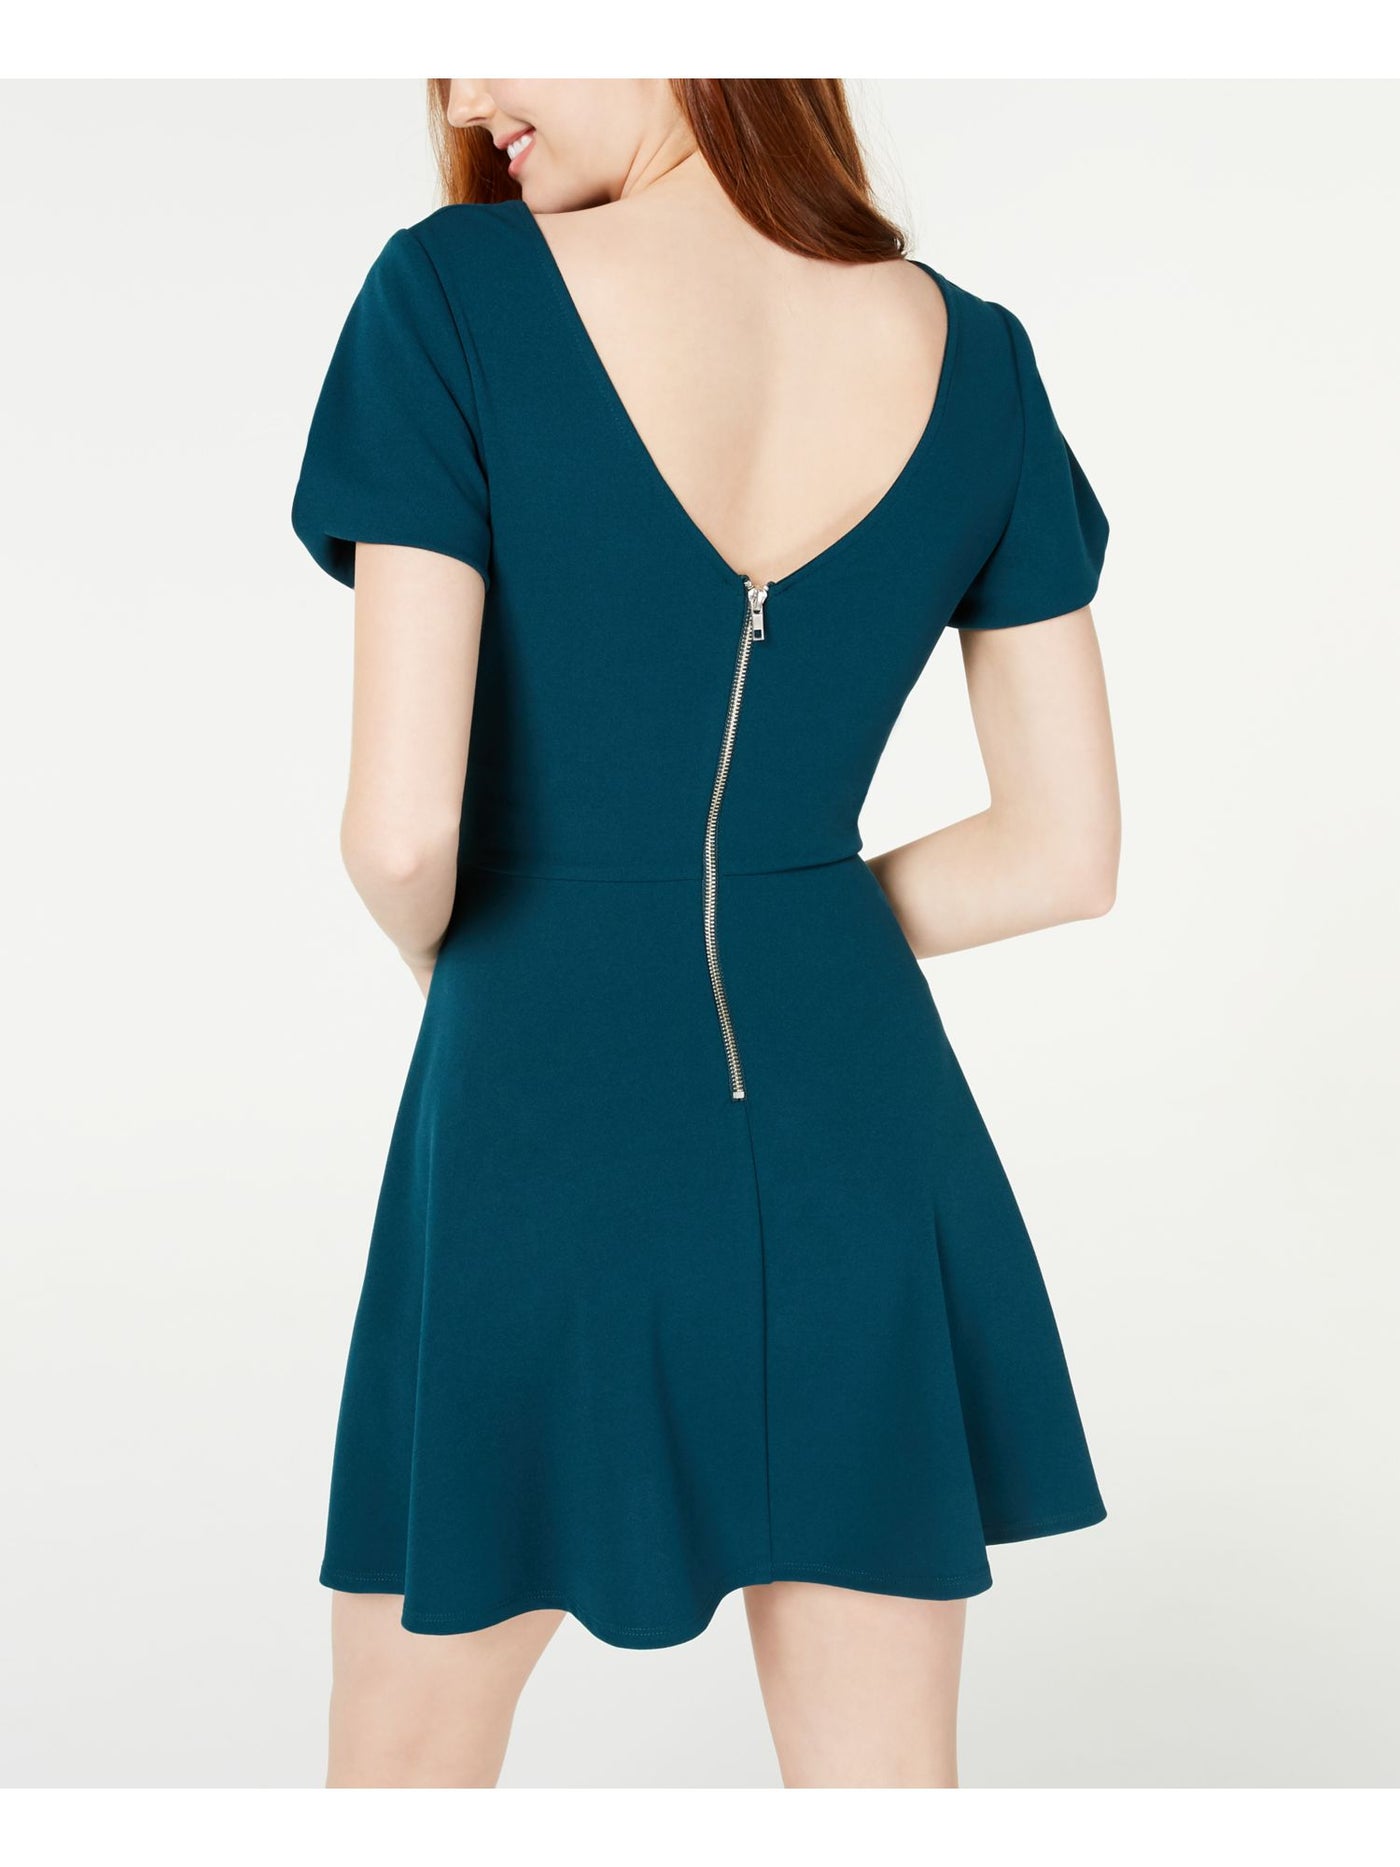 SPEECHLESS Womens Green Petal Sleeve Jewel Neck Mini Fit + Flare Dress Juniors XS